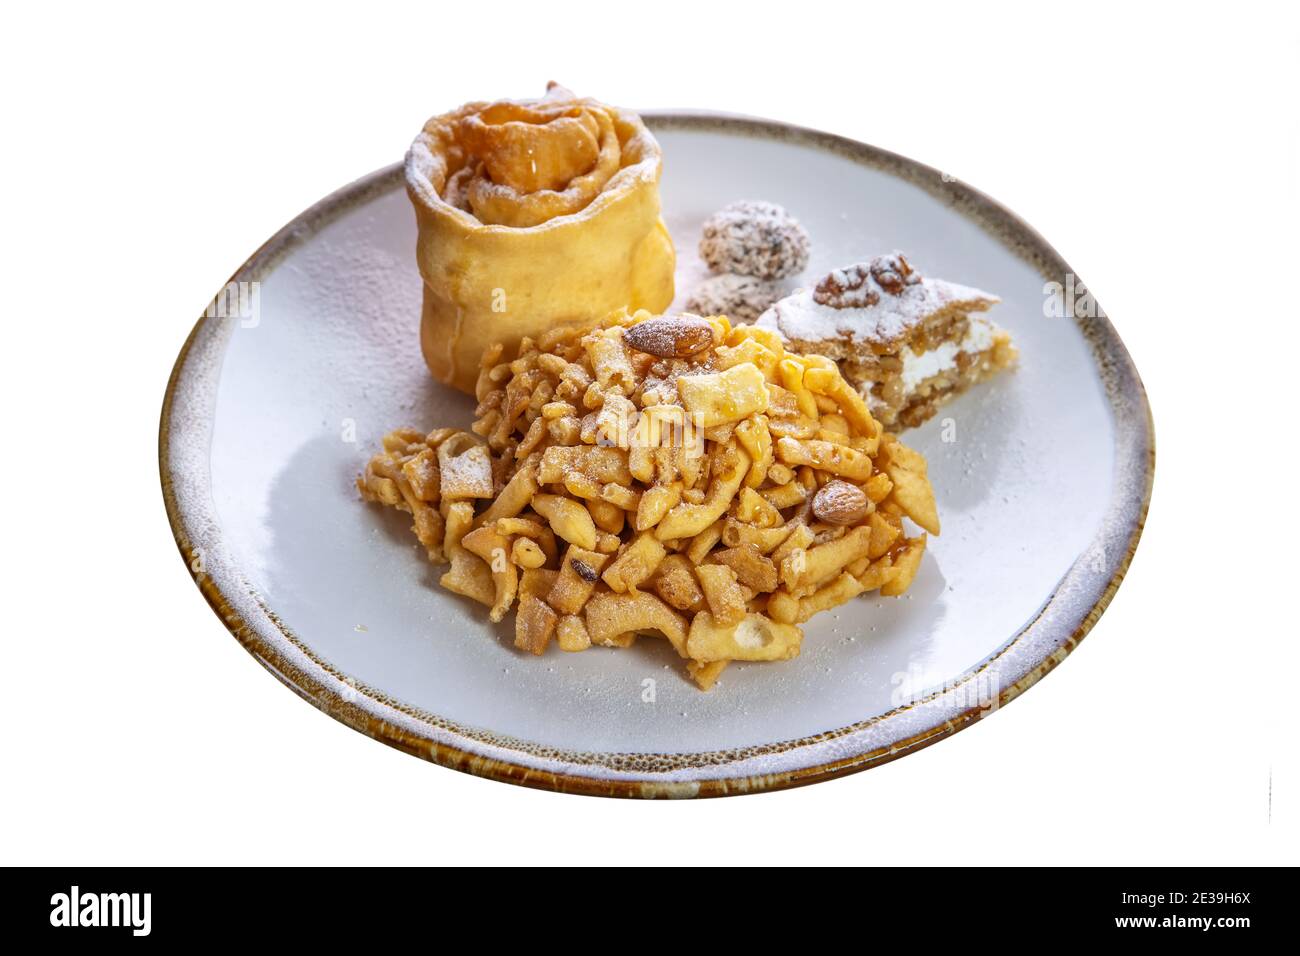 Dessert de pâtisseries fraîches, chak-chak, arrosé de sucre en poudre dans une assiette sur fond blanc isolé. Plat national traditionnel tatar. Banque D'Images